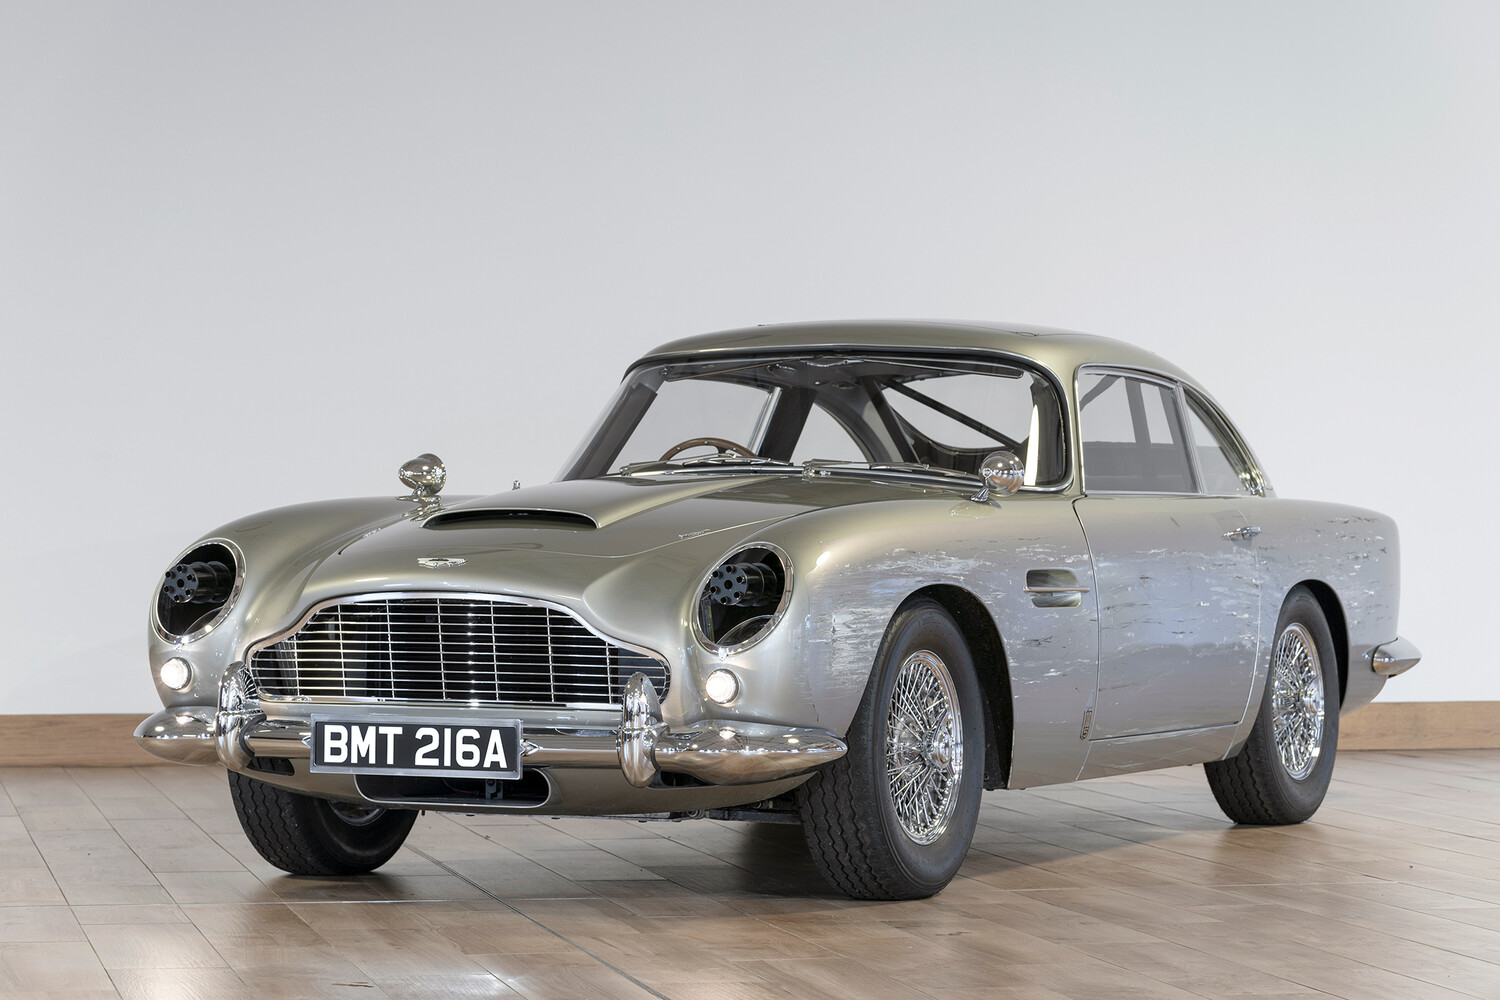 Aston Martin выпустил детский автомобиль с пулеметами стоимостью 3,2 миллиона гривен: новости и обзоры